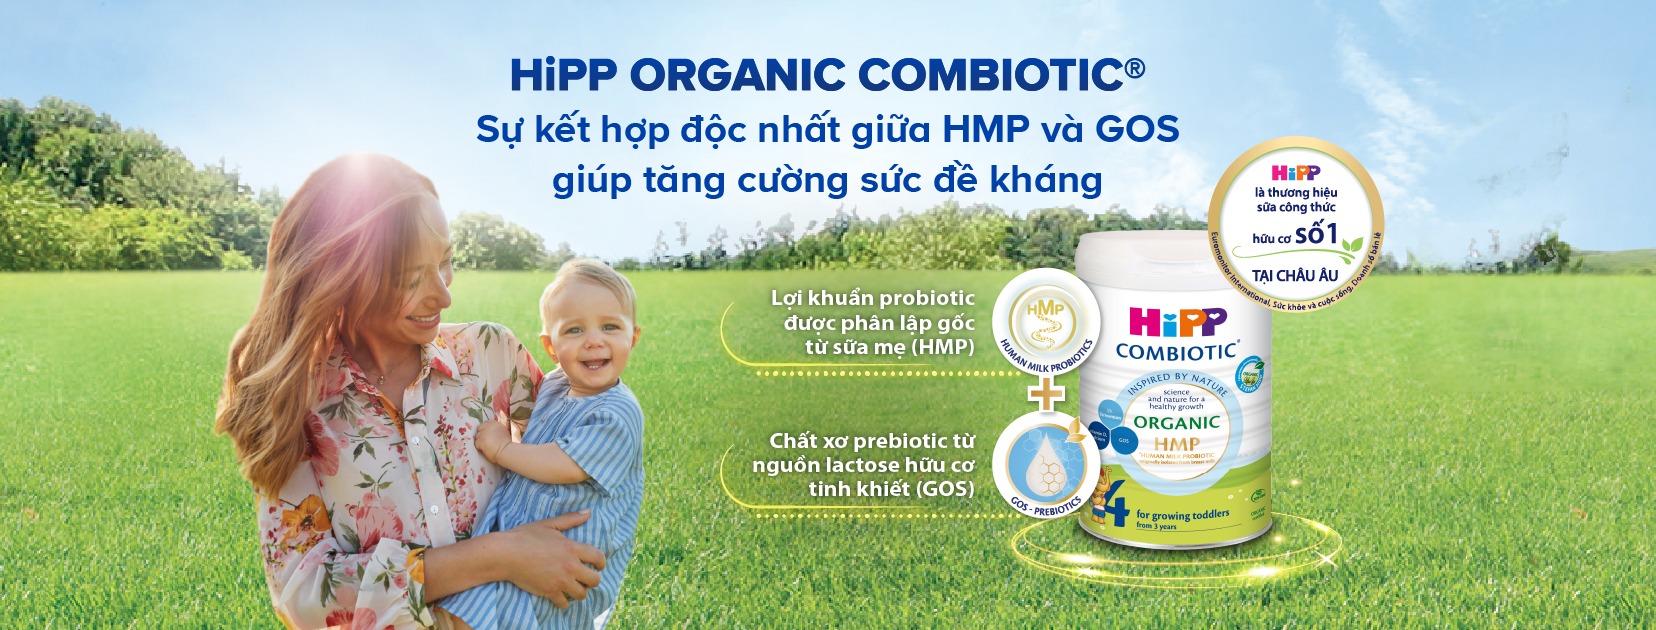 Sữa Dê Hipp Organic Mới 1 Sự Lựa Chọn Thông Thái Cho Hệ Tiêu Hoá Khoẻ, Bé Lớn Nhanh!